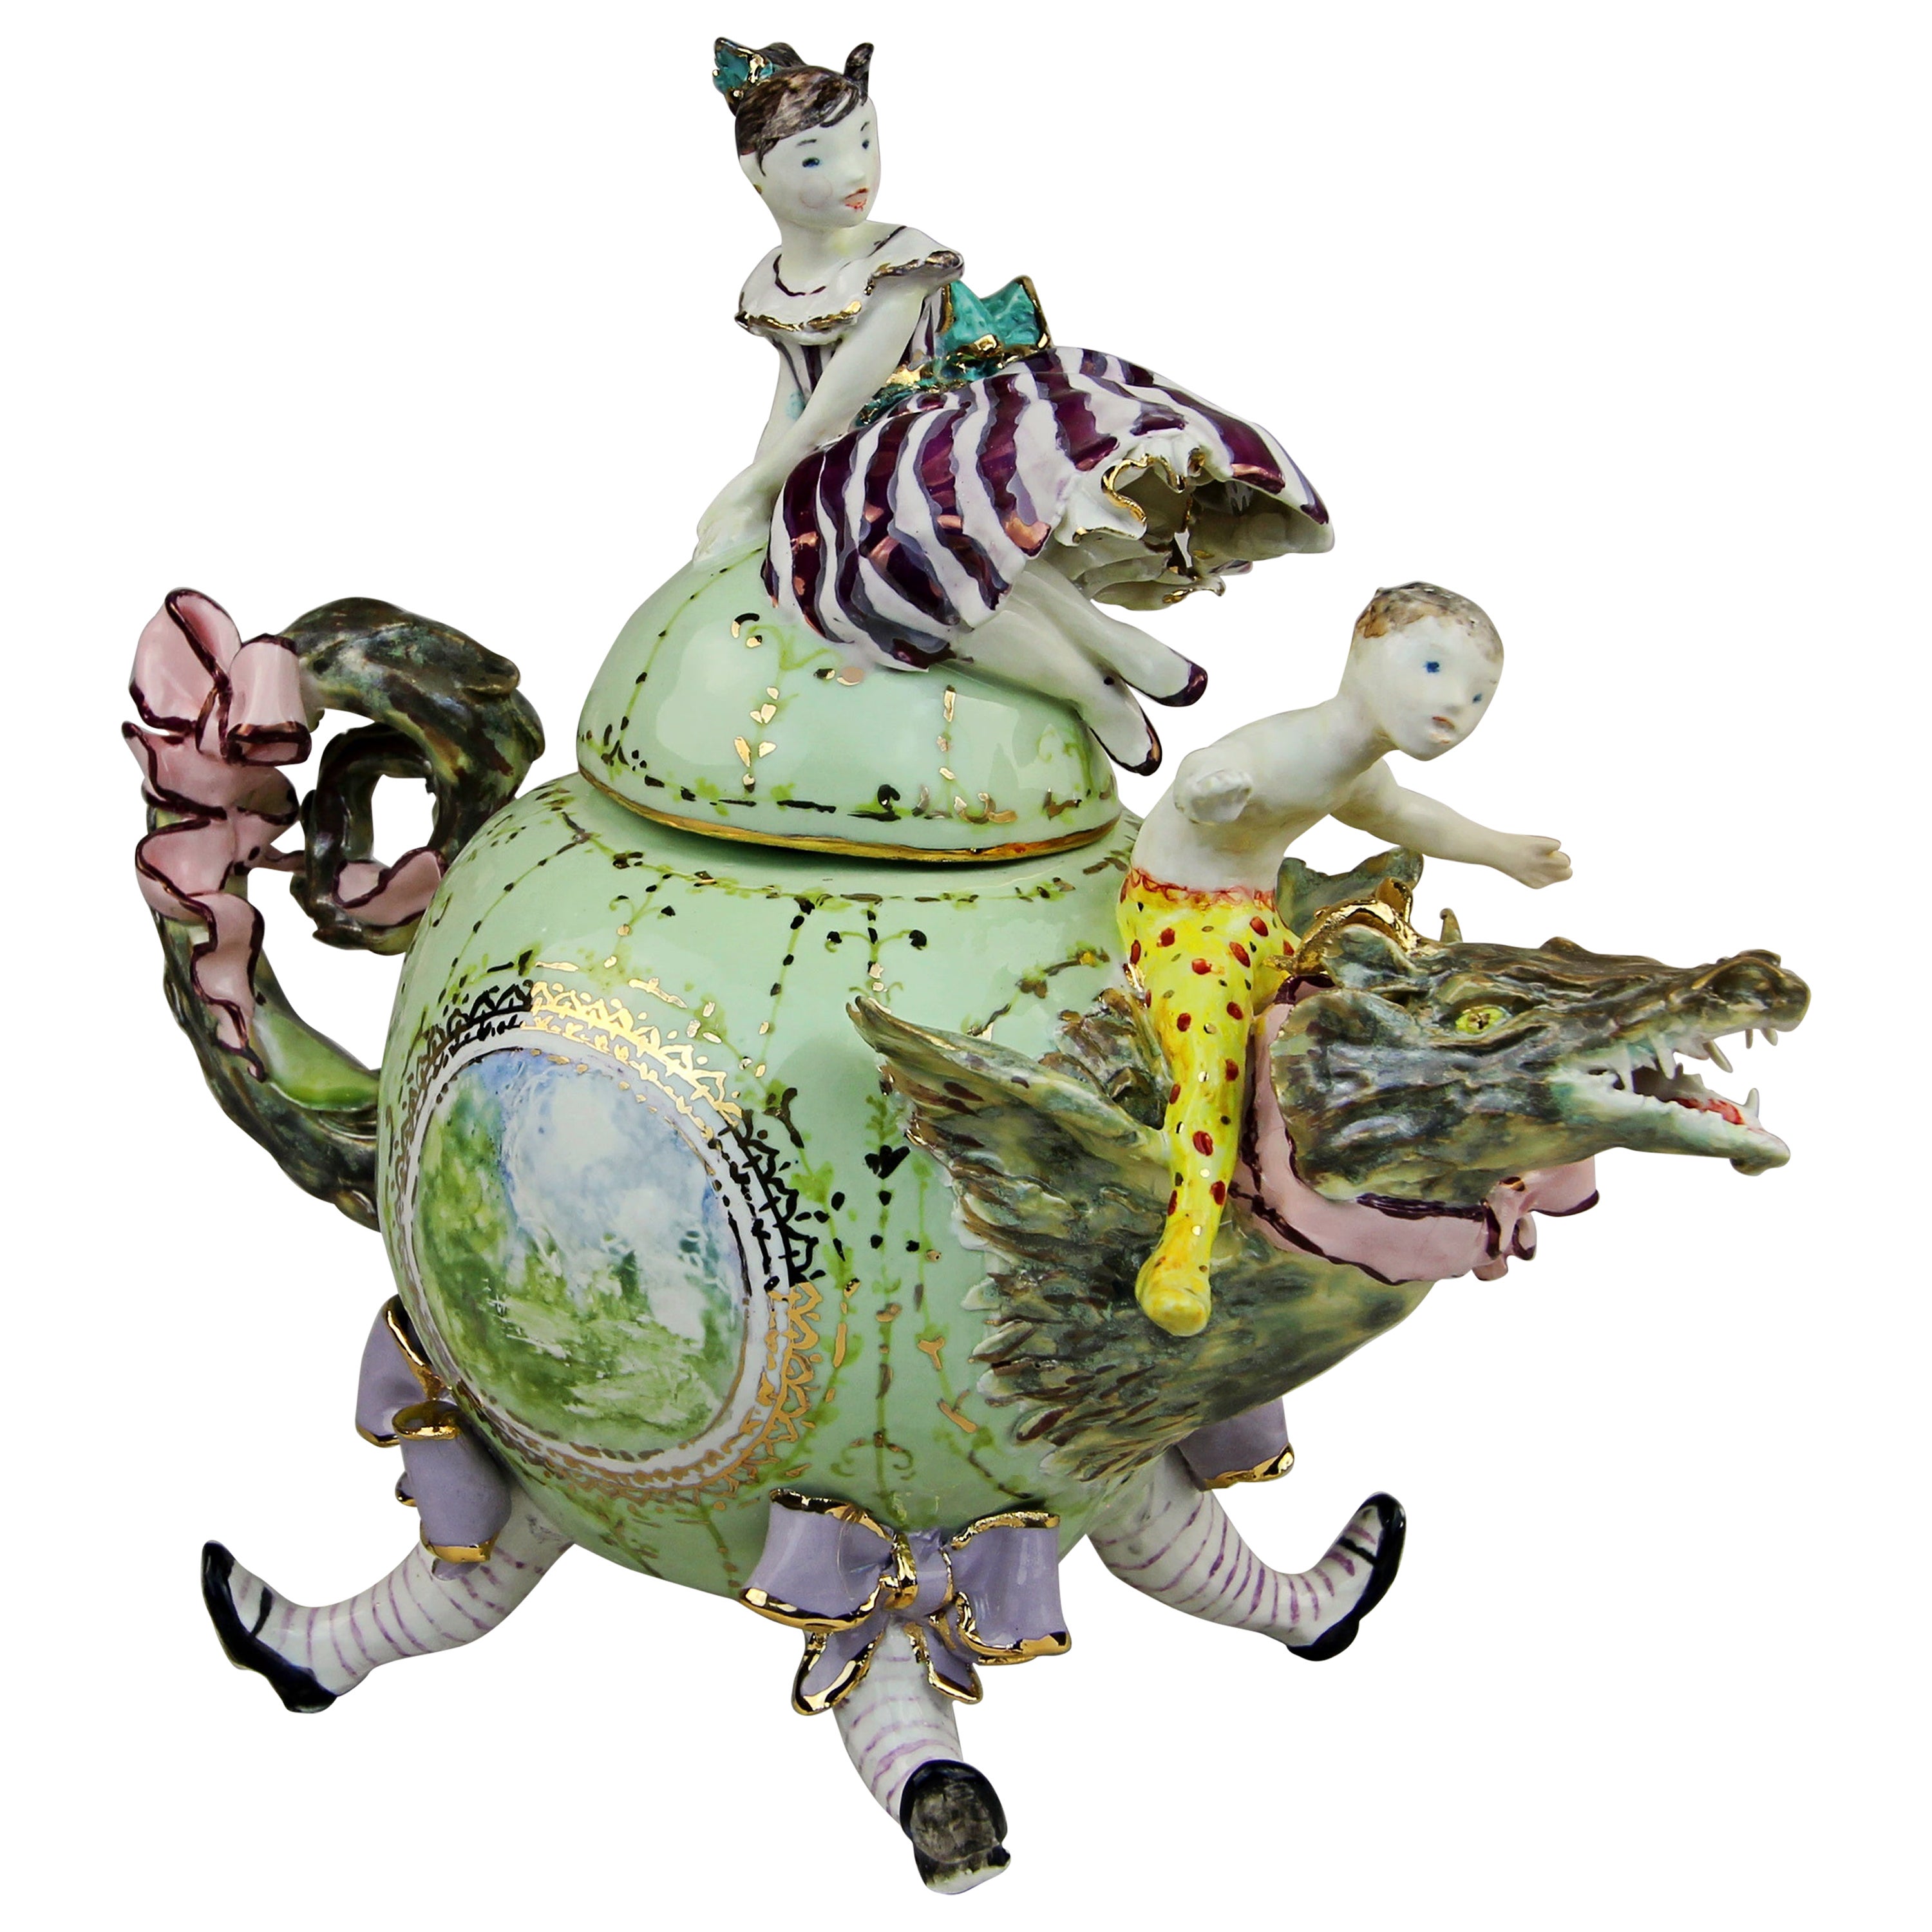 Porcelaine dragon en porcelaine, fabriqué à la main en Italie, design artisanal 2021 en vente